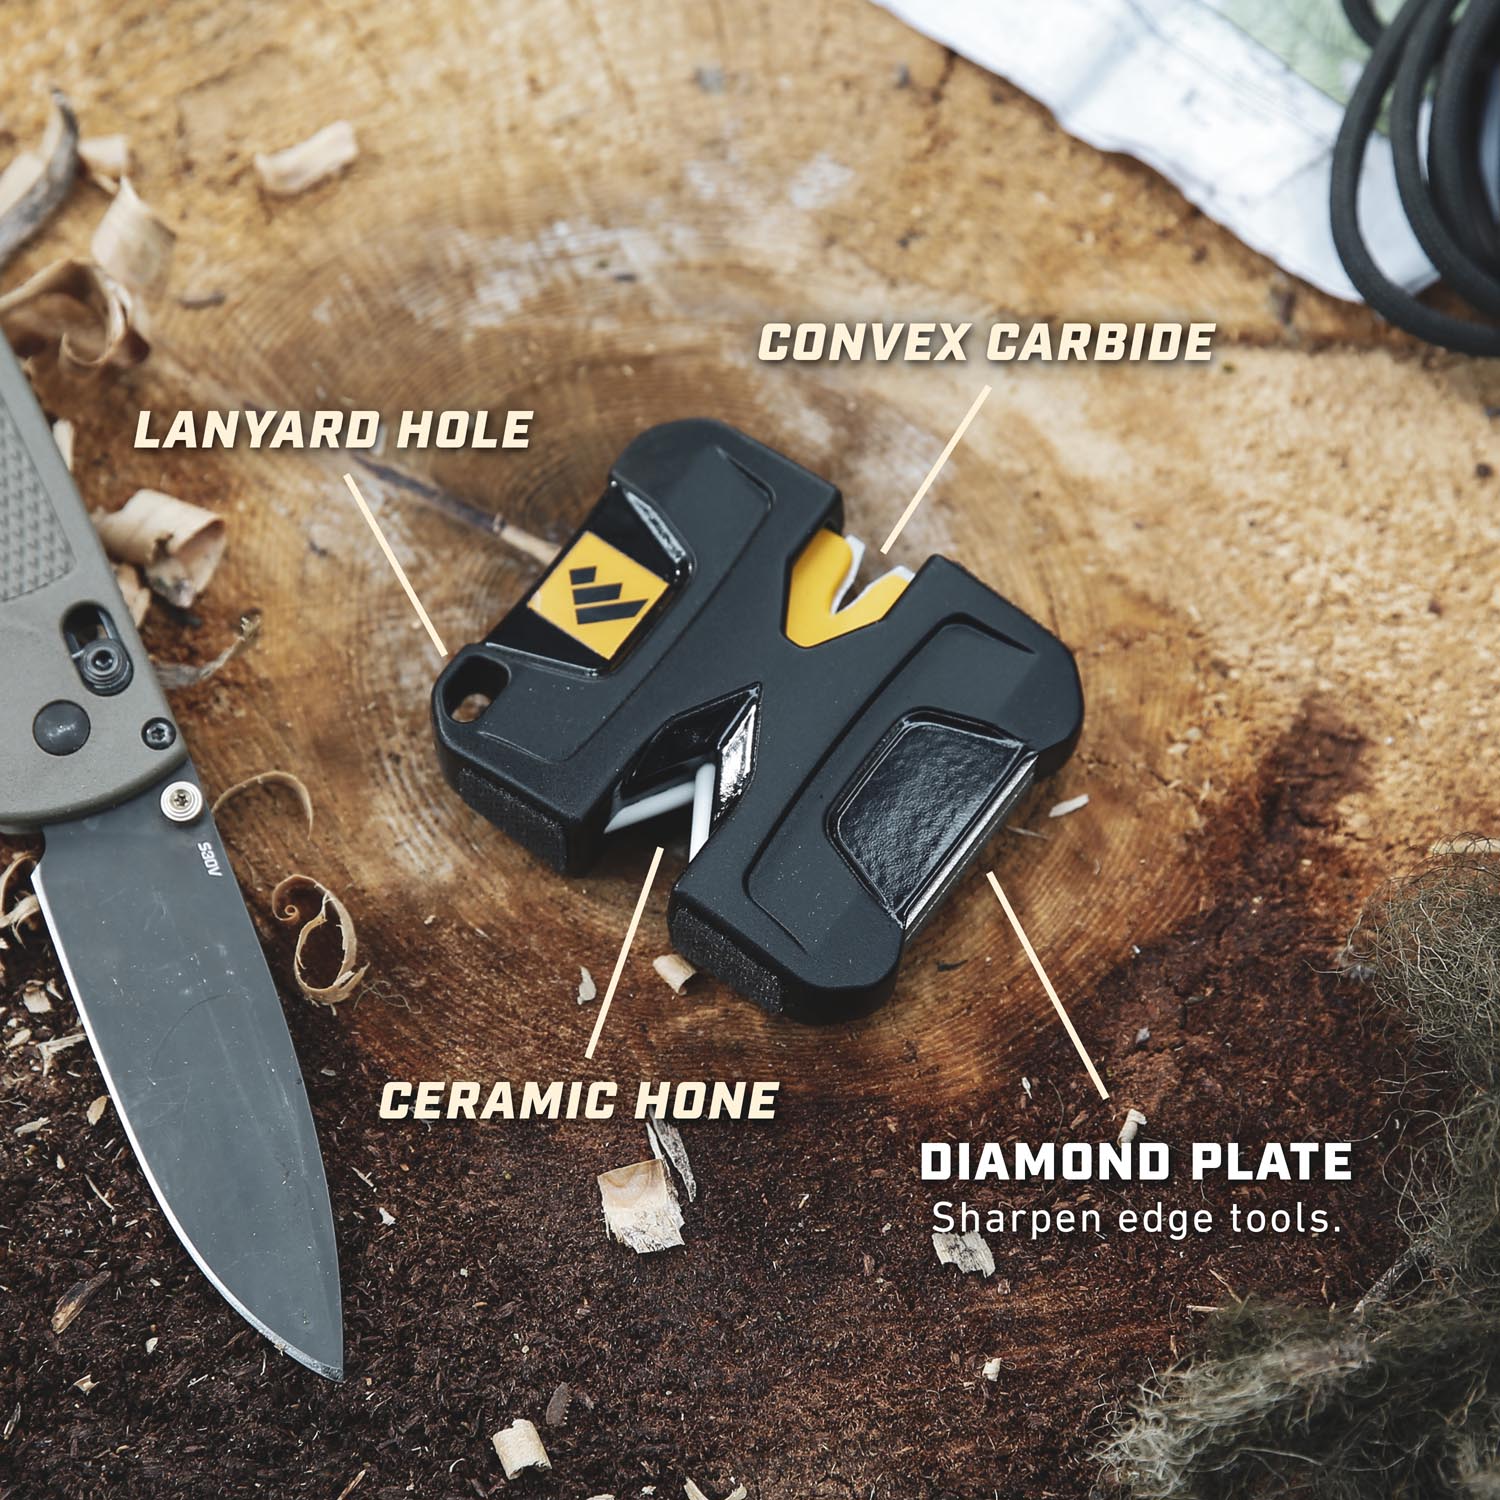 Pivot Knife Sharpener™ - Work Sharp Sharpeners